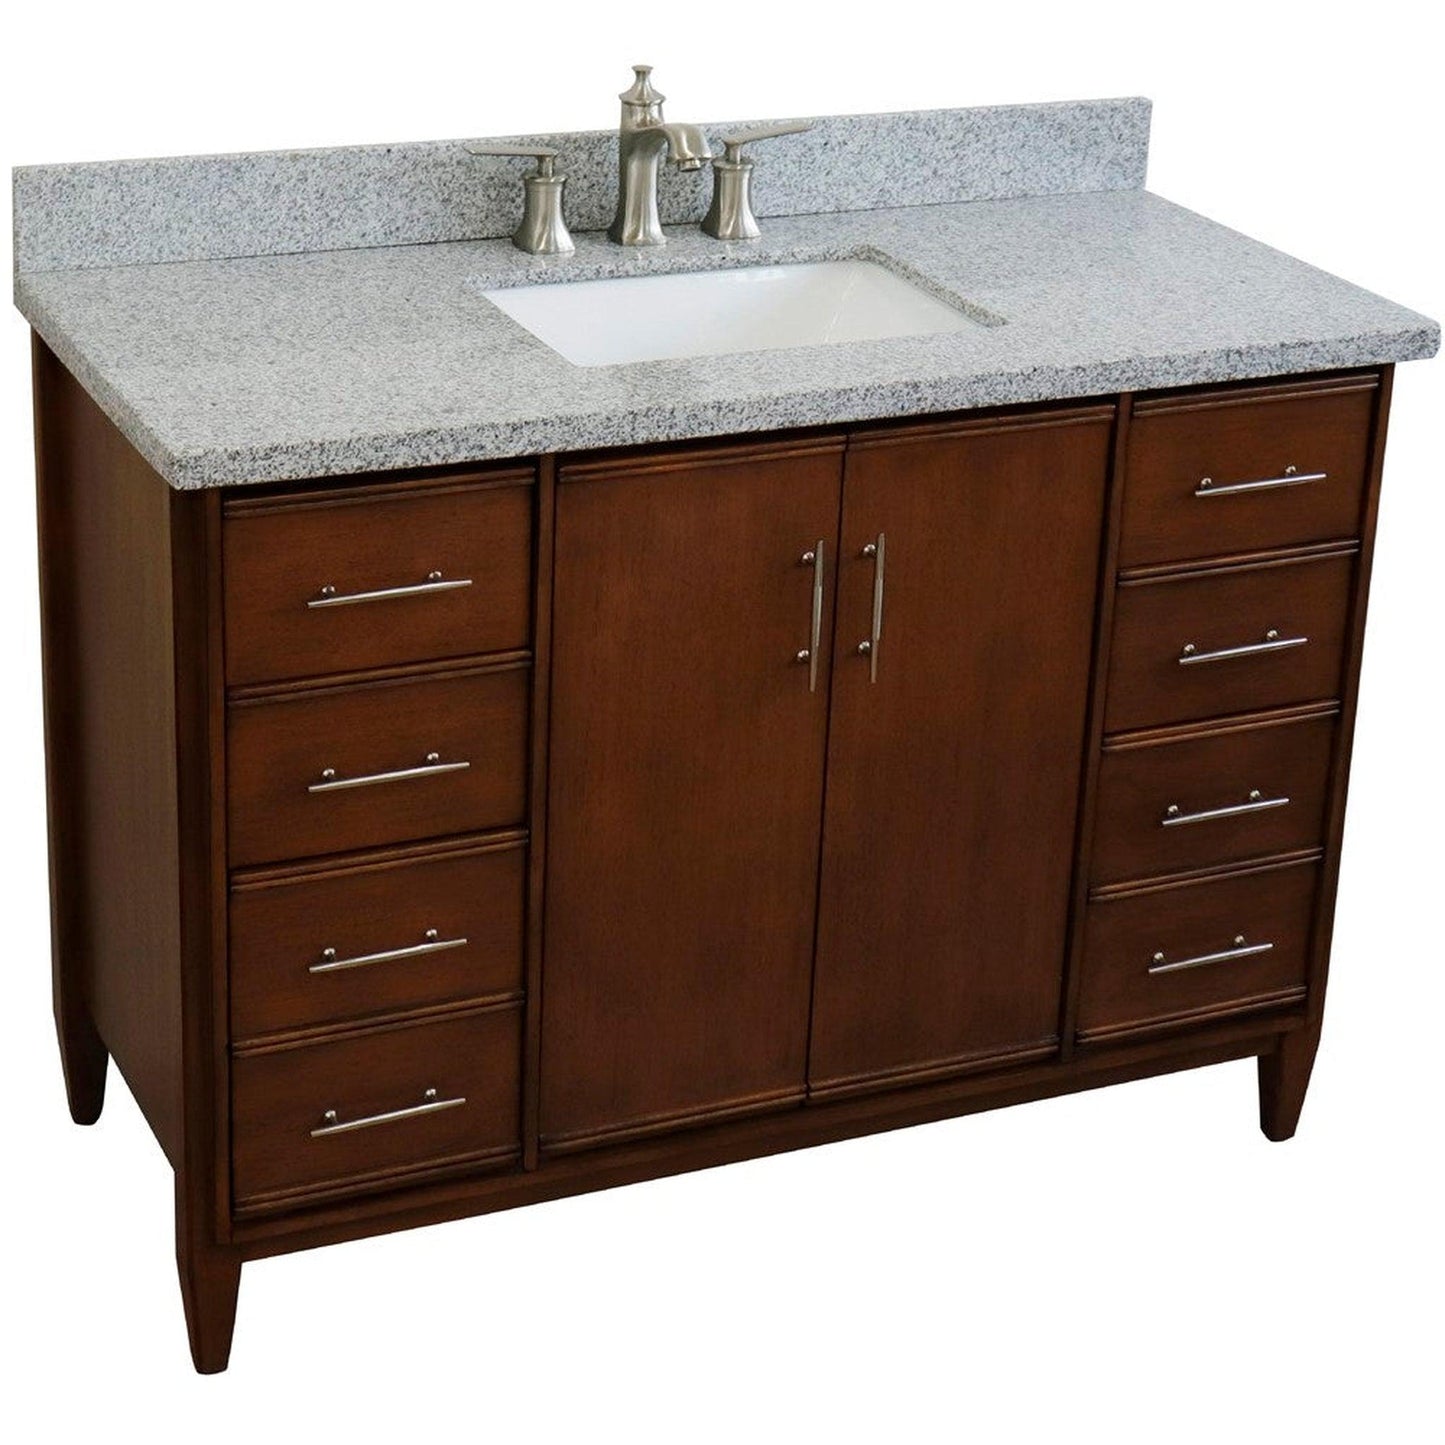 Bellaterra Home MCM 49" 2-Door 6-Drawer Walnut Freestanding Vanity Set With Ceramic Undermount Rectangular Sink and Gray Granite Top